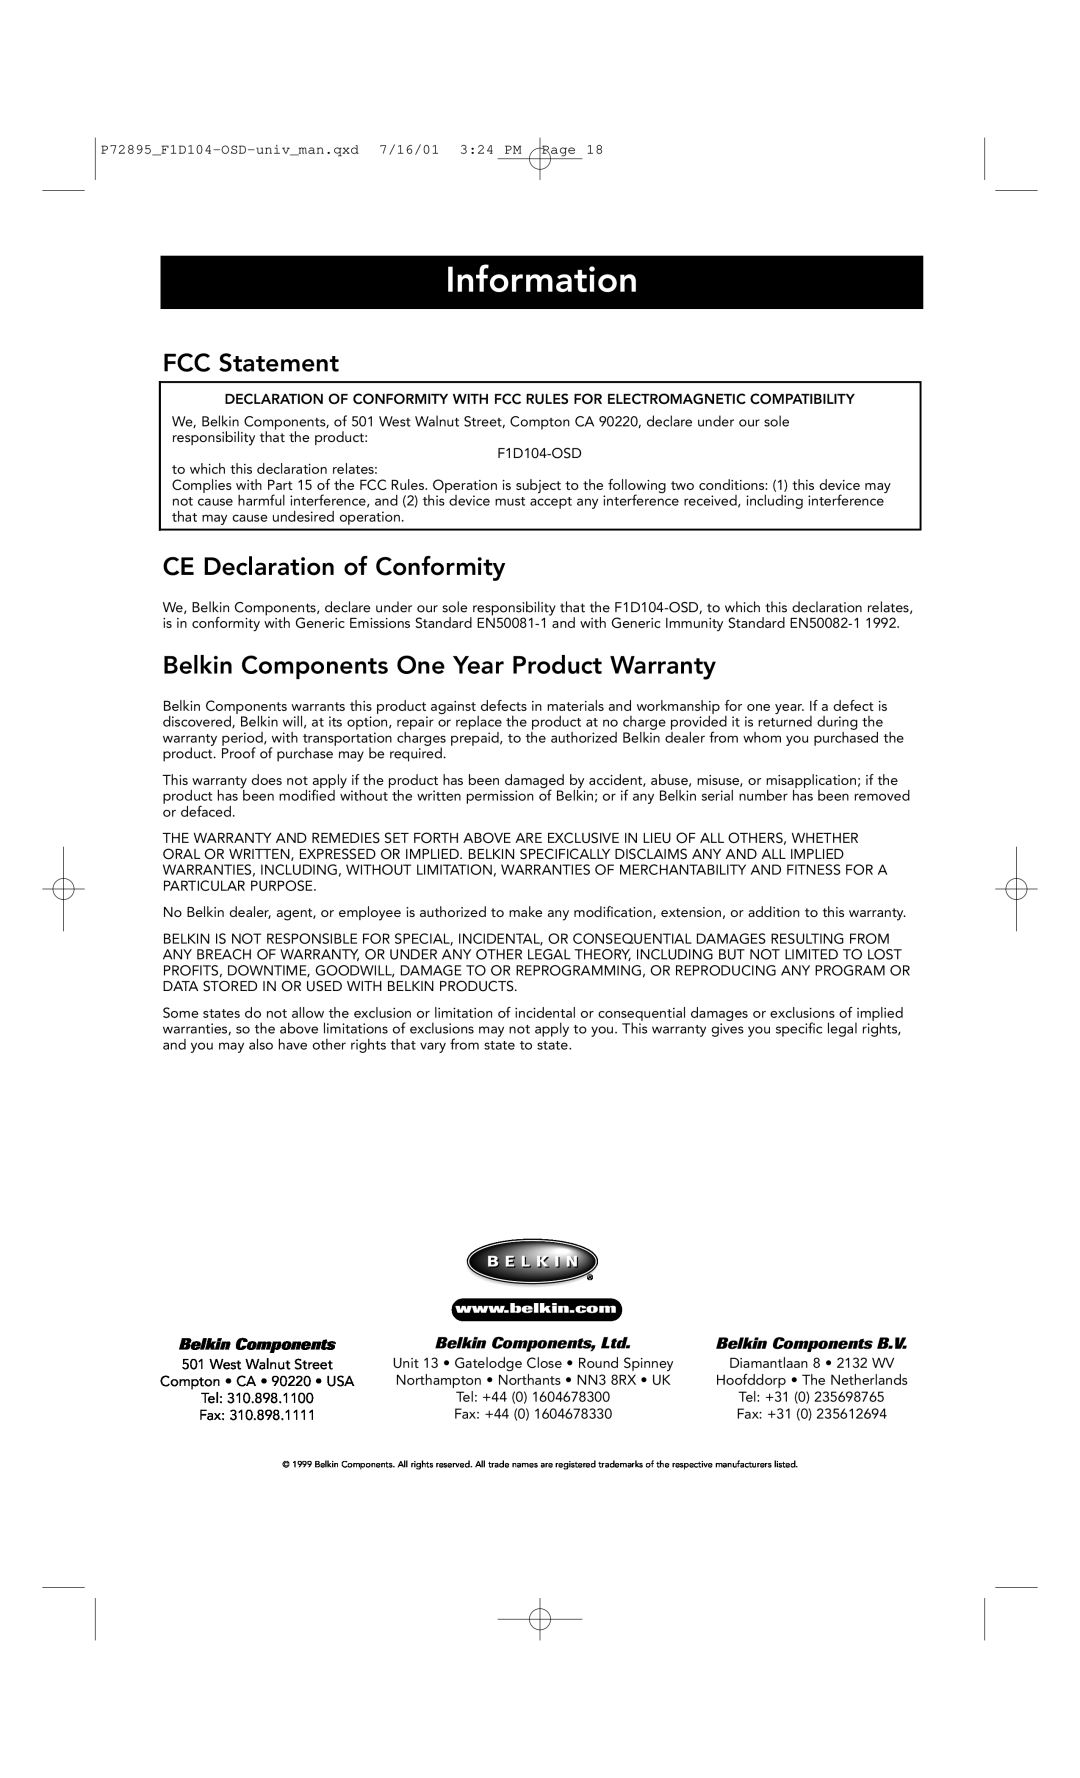 Belkin F1D104-OSD Information, FCC Statement, CE Declaration of Conformity, Belkin Components One Year Product Warranty 